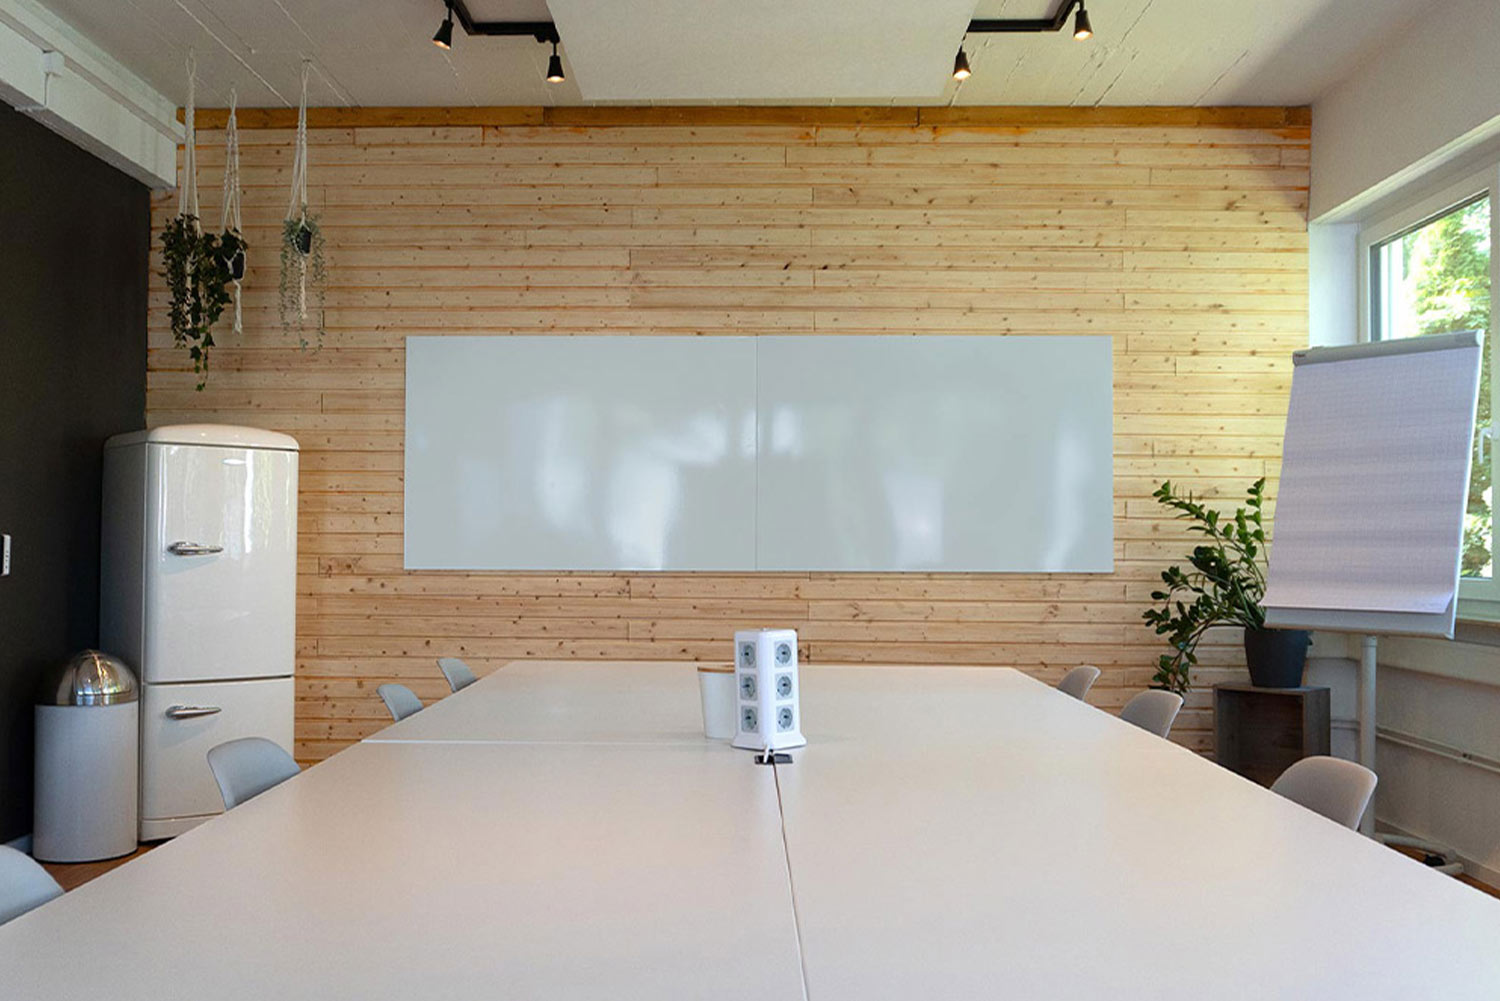 Langer Meetingtisch mit Stühlen und einem Whiteboard an einer Holzwand. Daneben sieht man einen Kühlschrank, Pflanzen und ein mobiles Flipchart. Im Anschnitt sieht man ein offenes Regal.